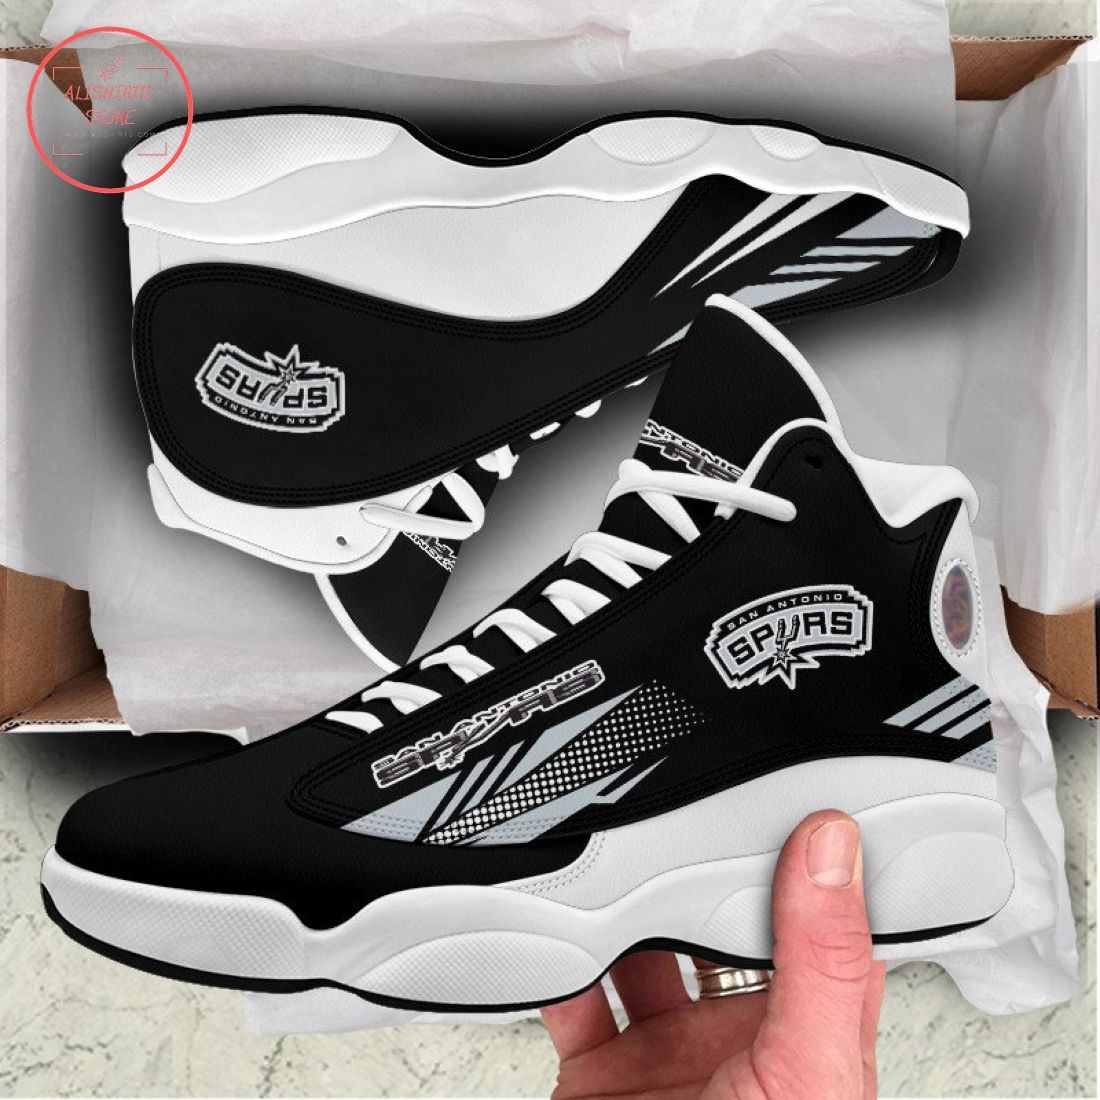 San Antonio Spurs Air Jordan 13 Sneaker Shoes